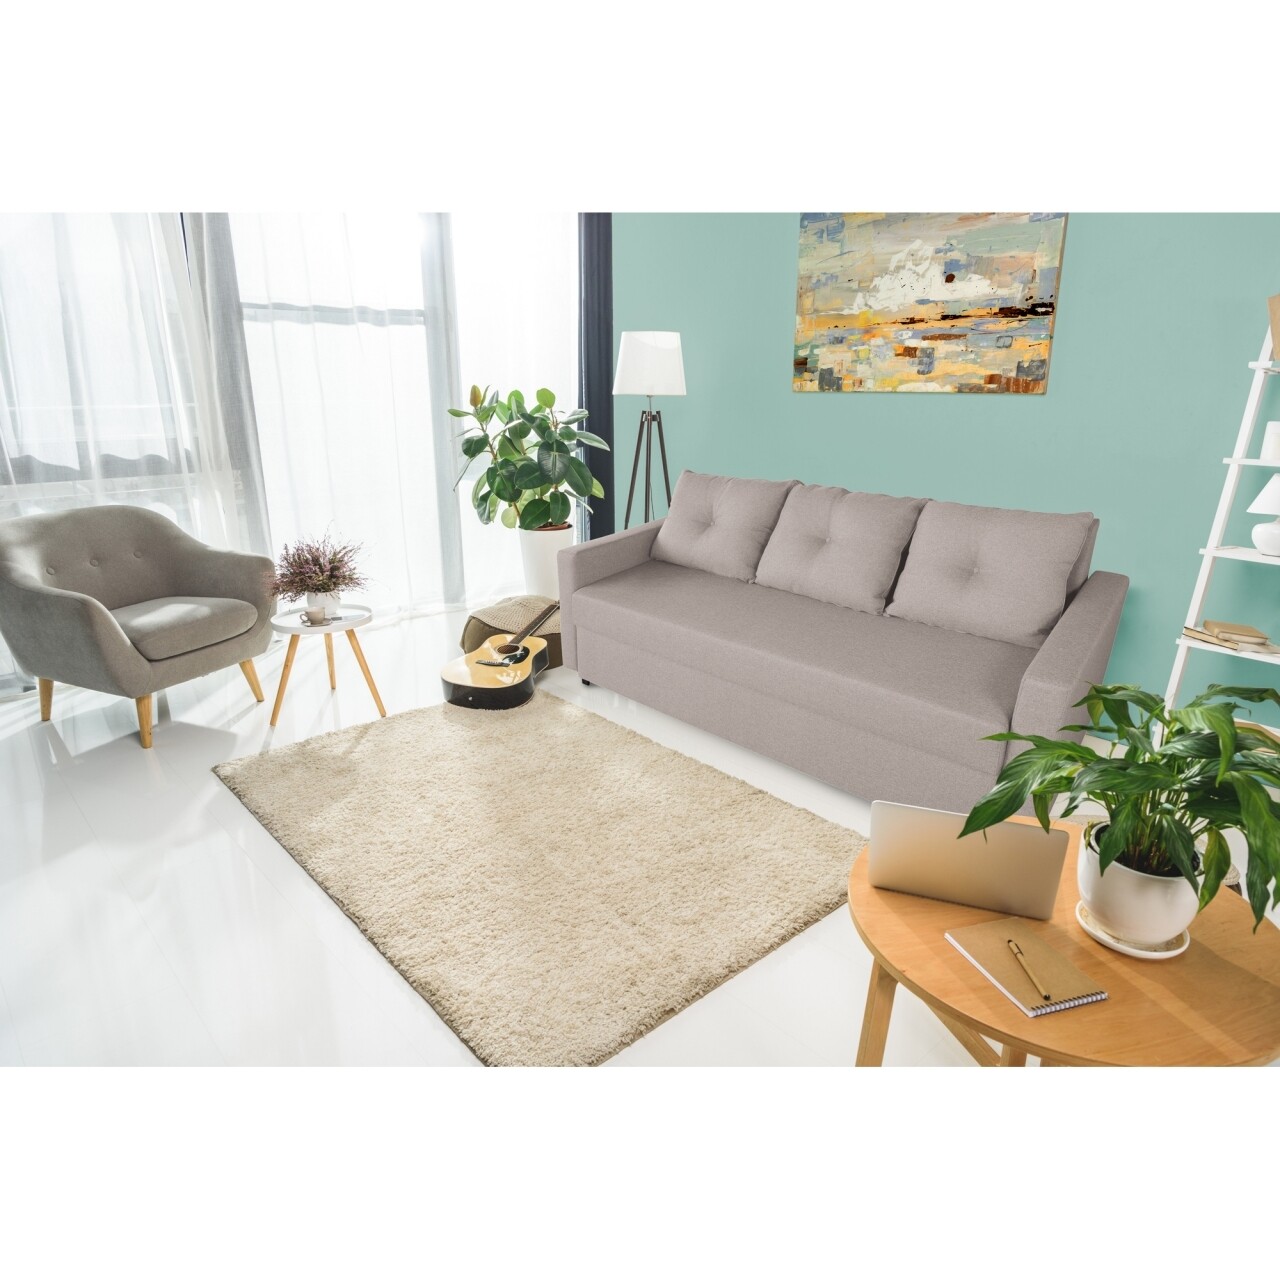 Bedora firenze lux beige kihúzható kanapé 218x85x85 cm + tárolóládával, bézs